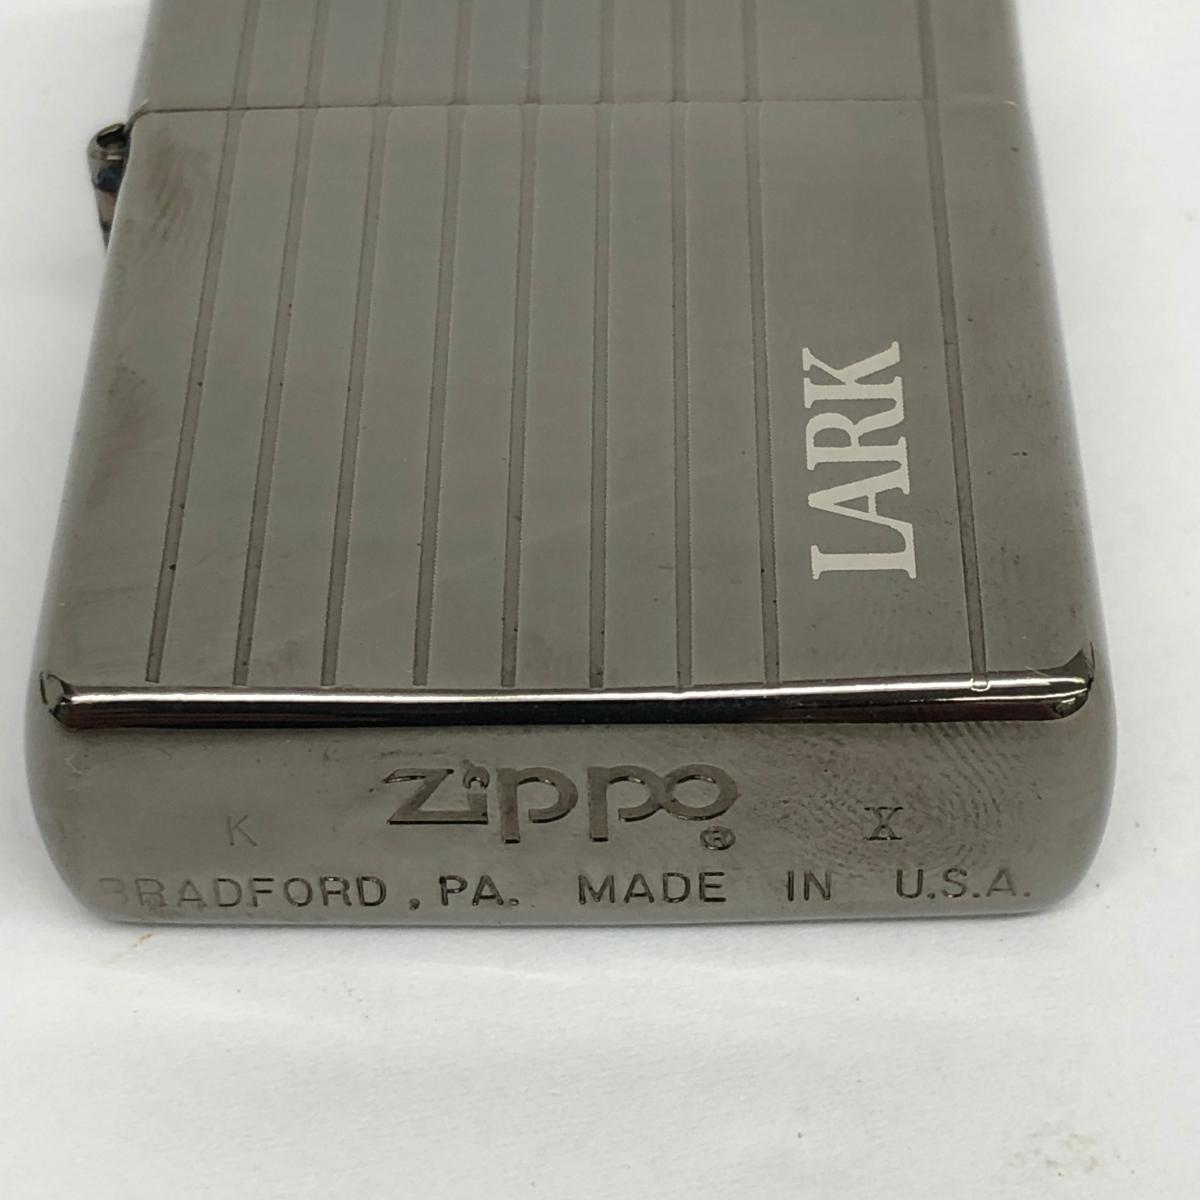 楽天市場】Zippo ジッポ ライター 箱付き 新品同様 1994年製 シルバー